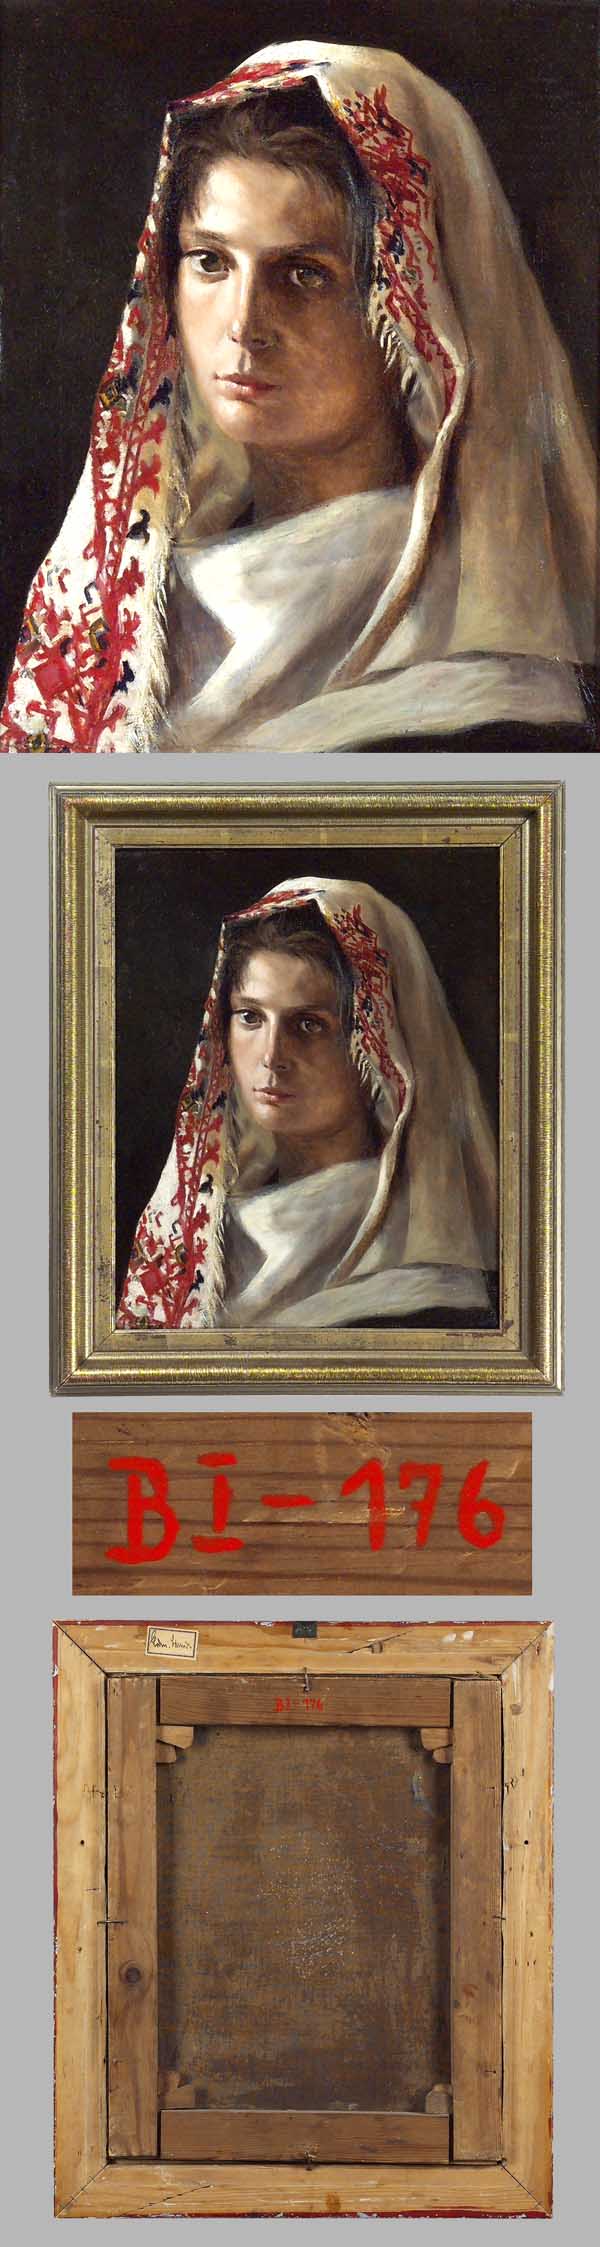 Porträtist Ende 19.Jahrhundert.